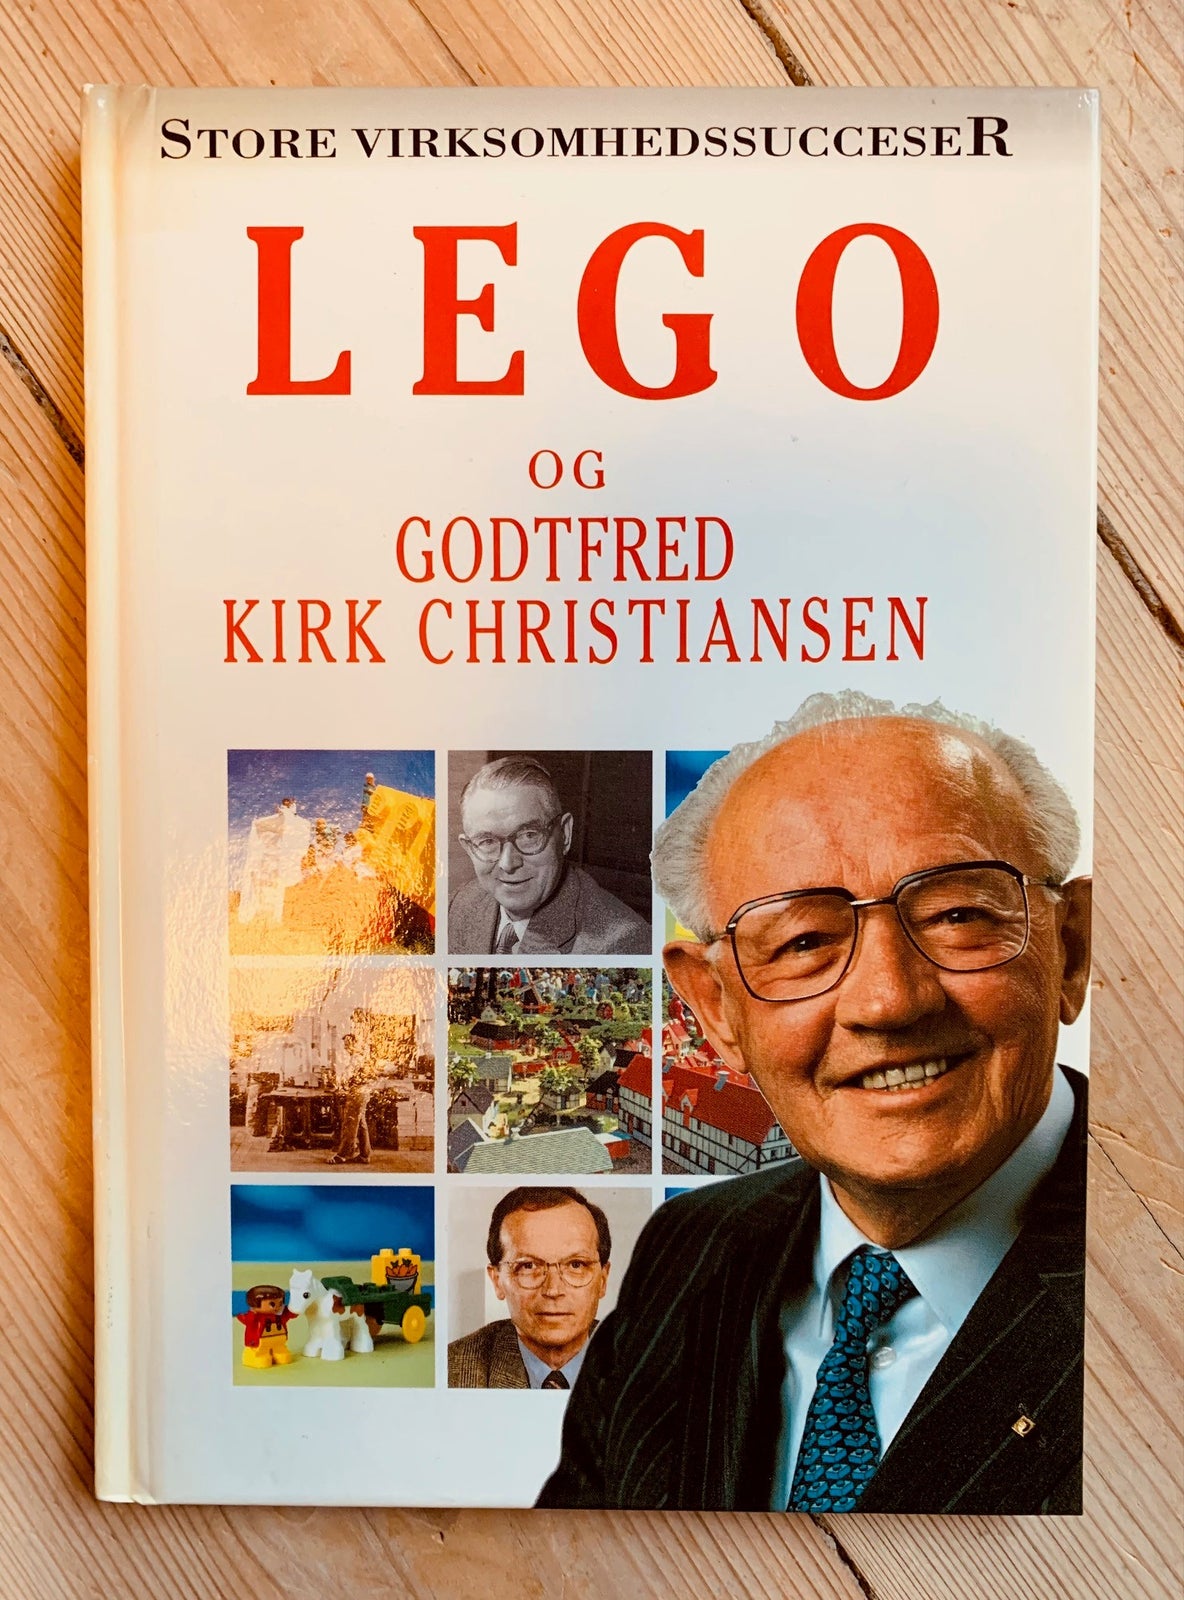 Lego og Kirk Christiansen, Ole Steen Hansen (1997), emne: organisation og ledelse – dba.dk – Køb og Salg af og